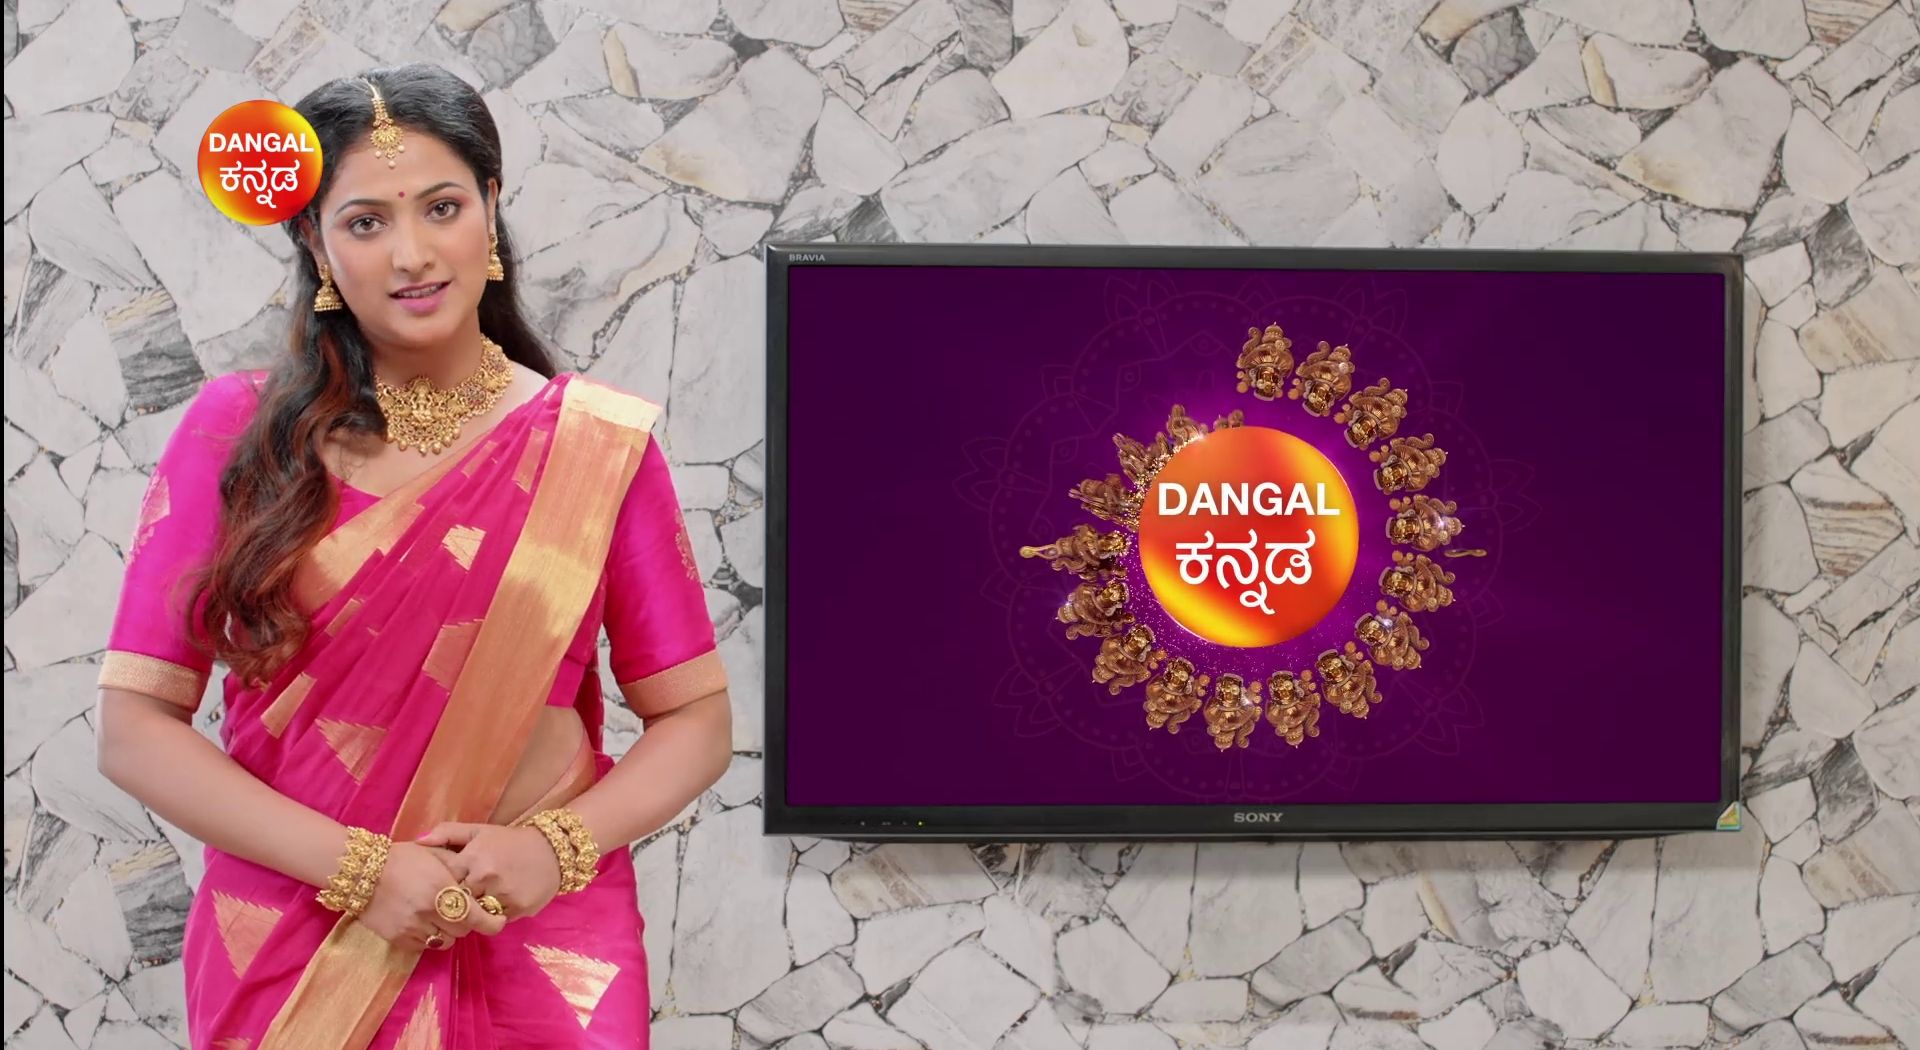 Dangal Kannada (Dum TV Kannada) GEC Launching on 30th September 5